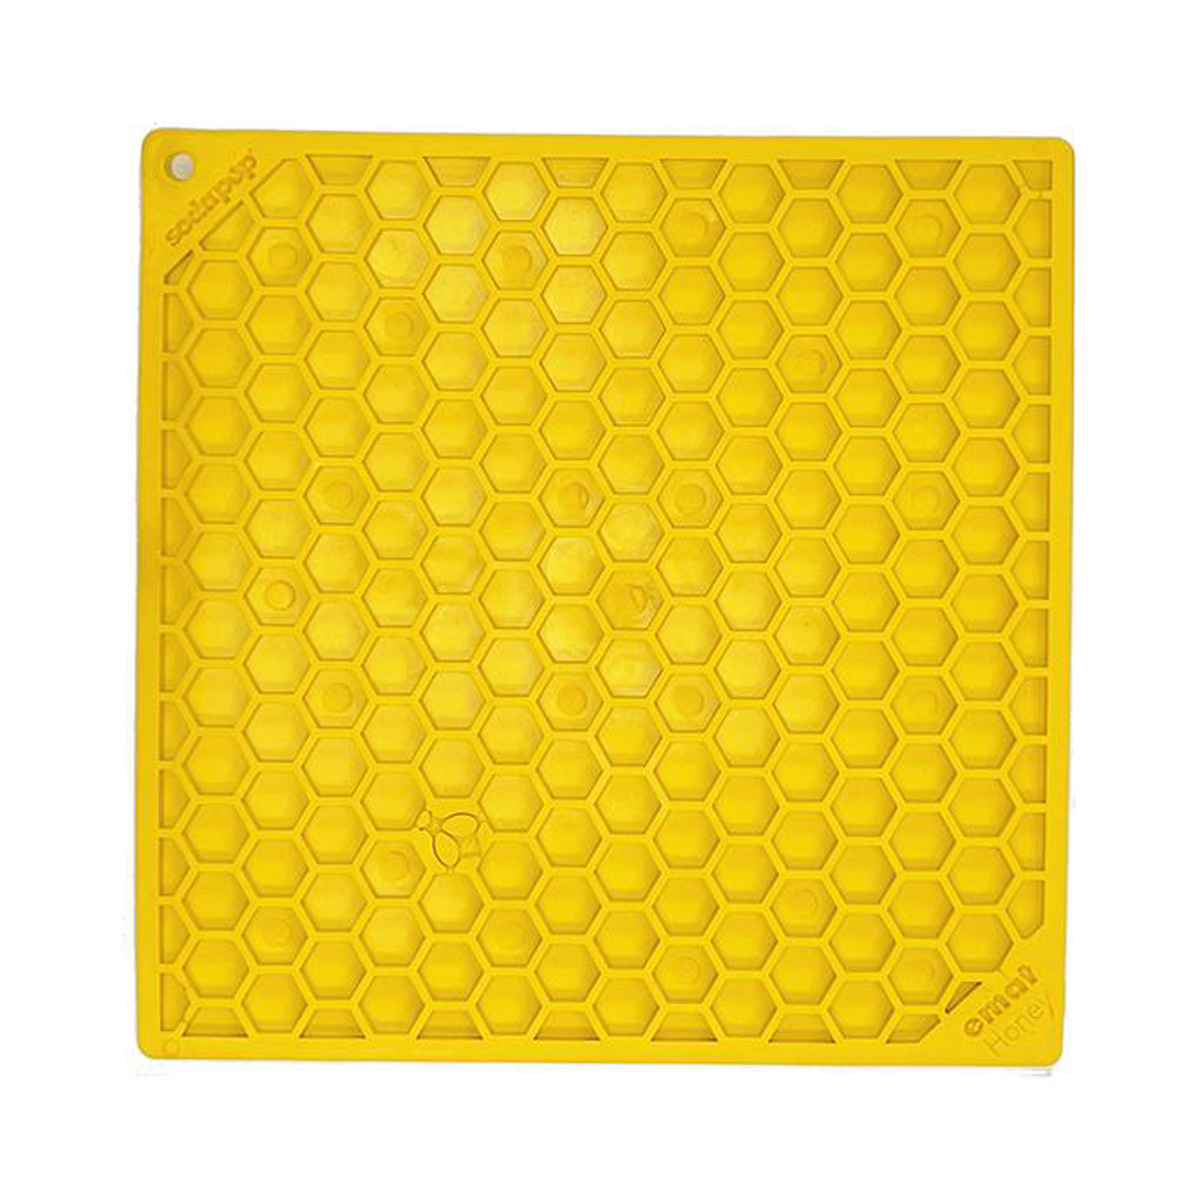 Sodapup Honeycomb Design Enrichment (EMat) Lick Mat